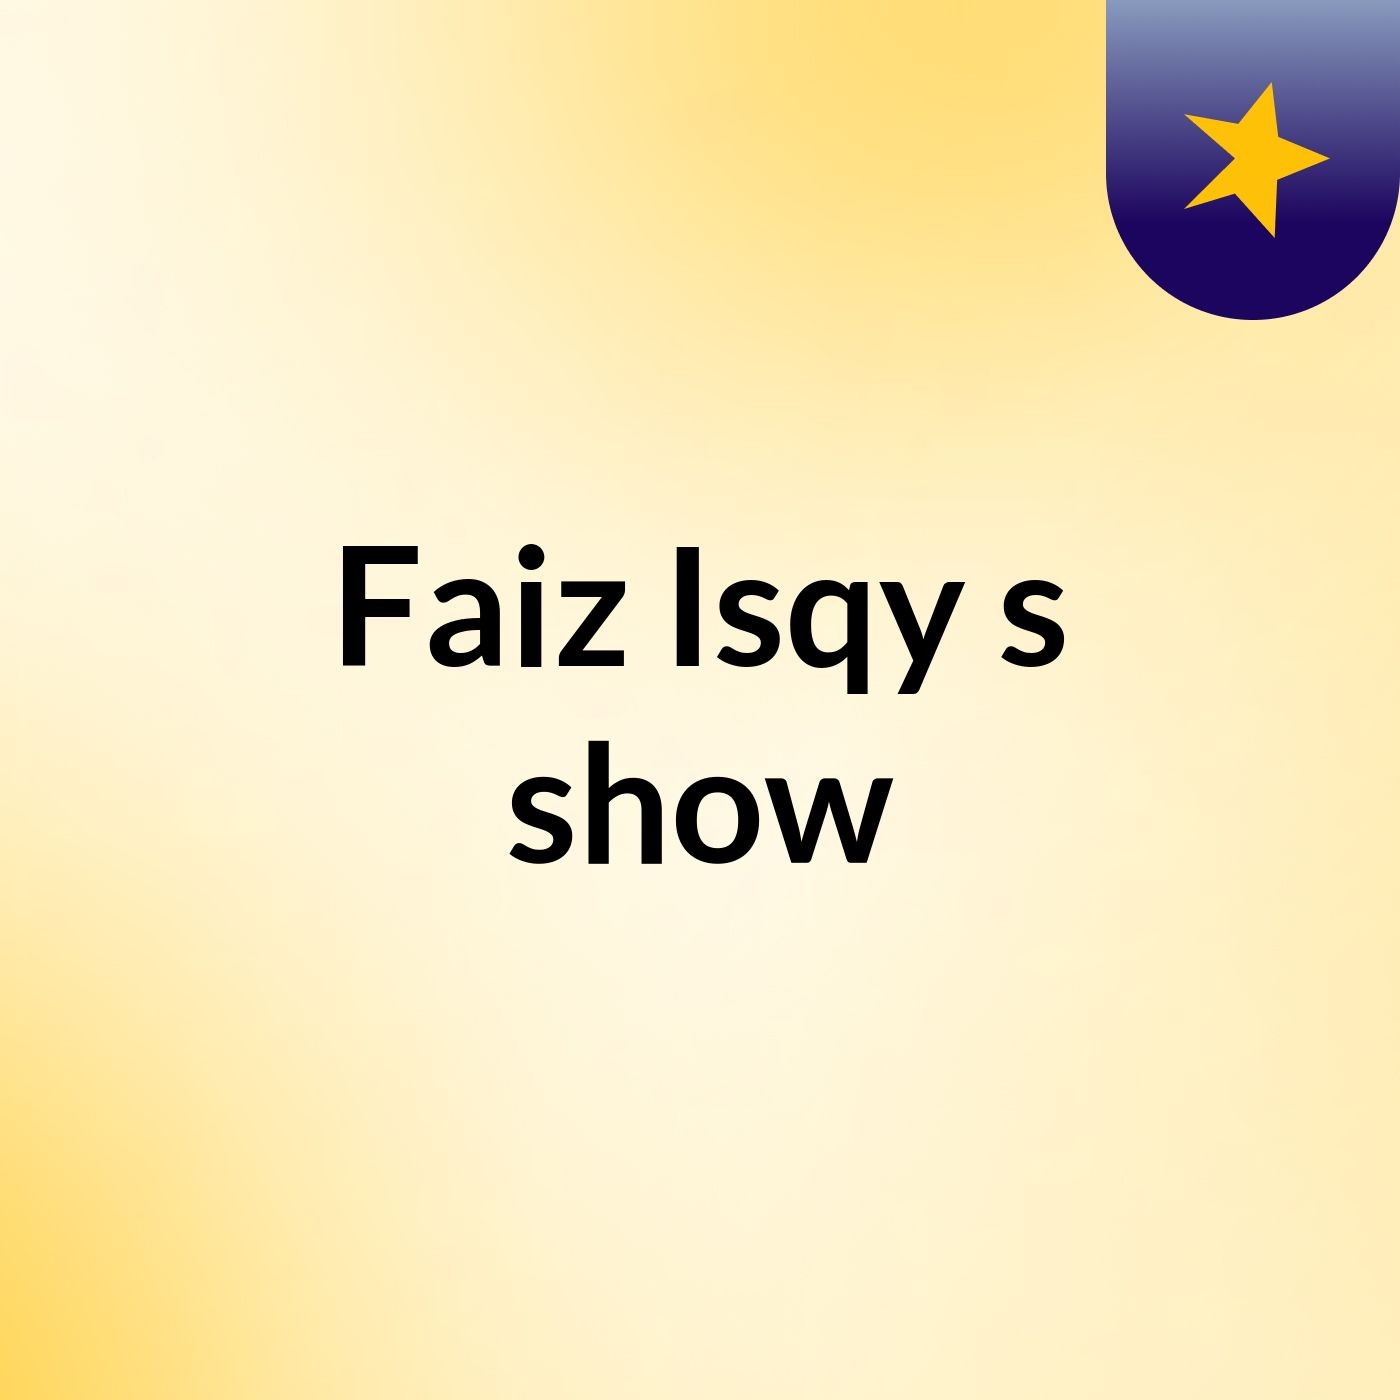 Faiz Isqy's show